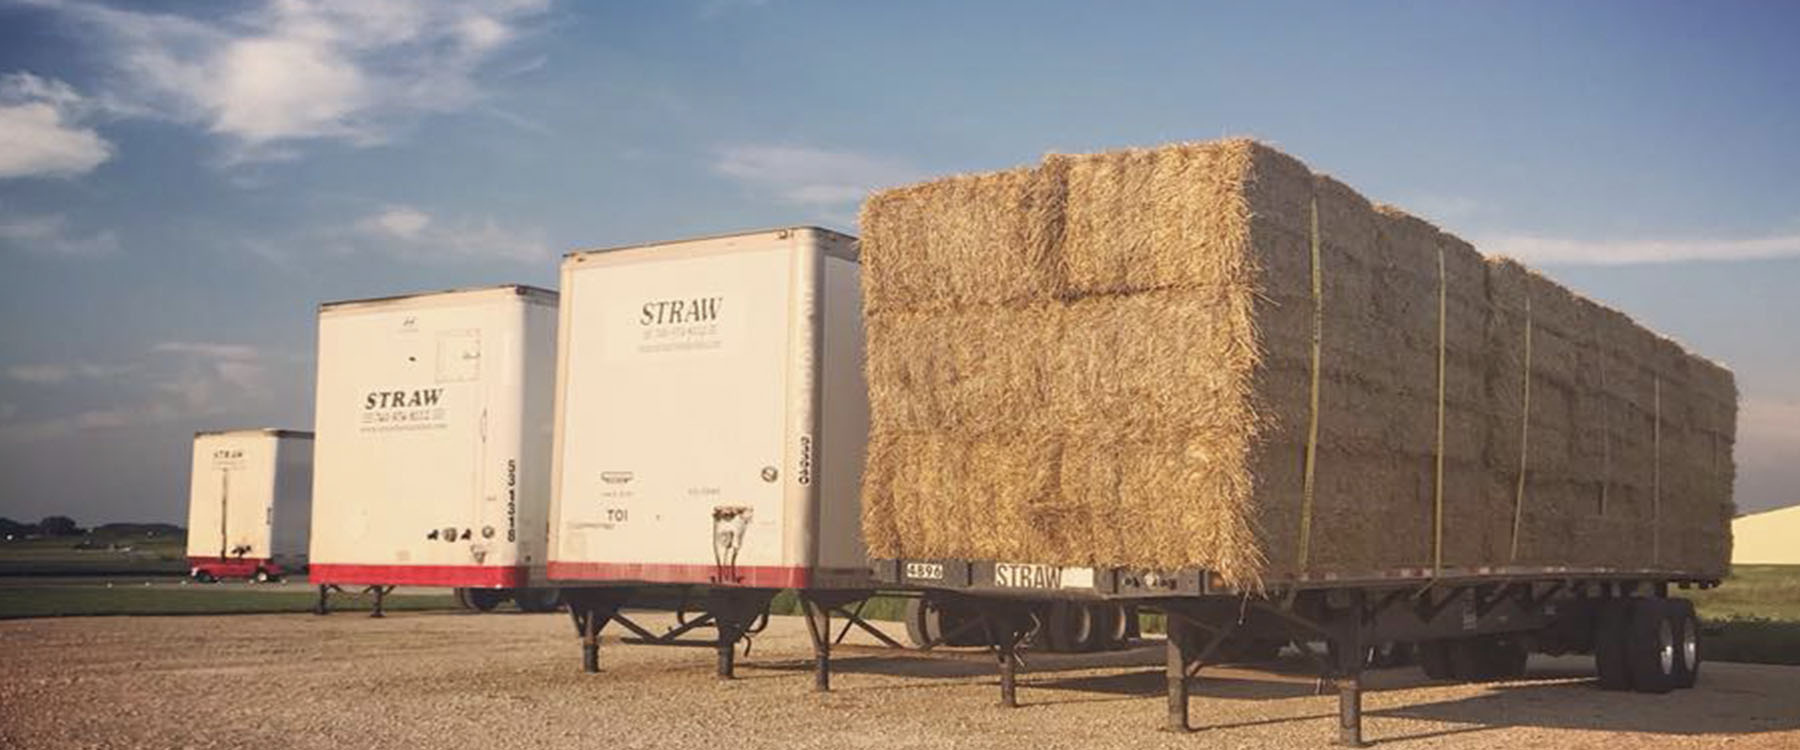 straw storage in trucks